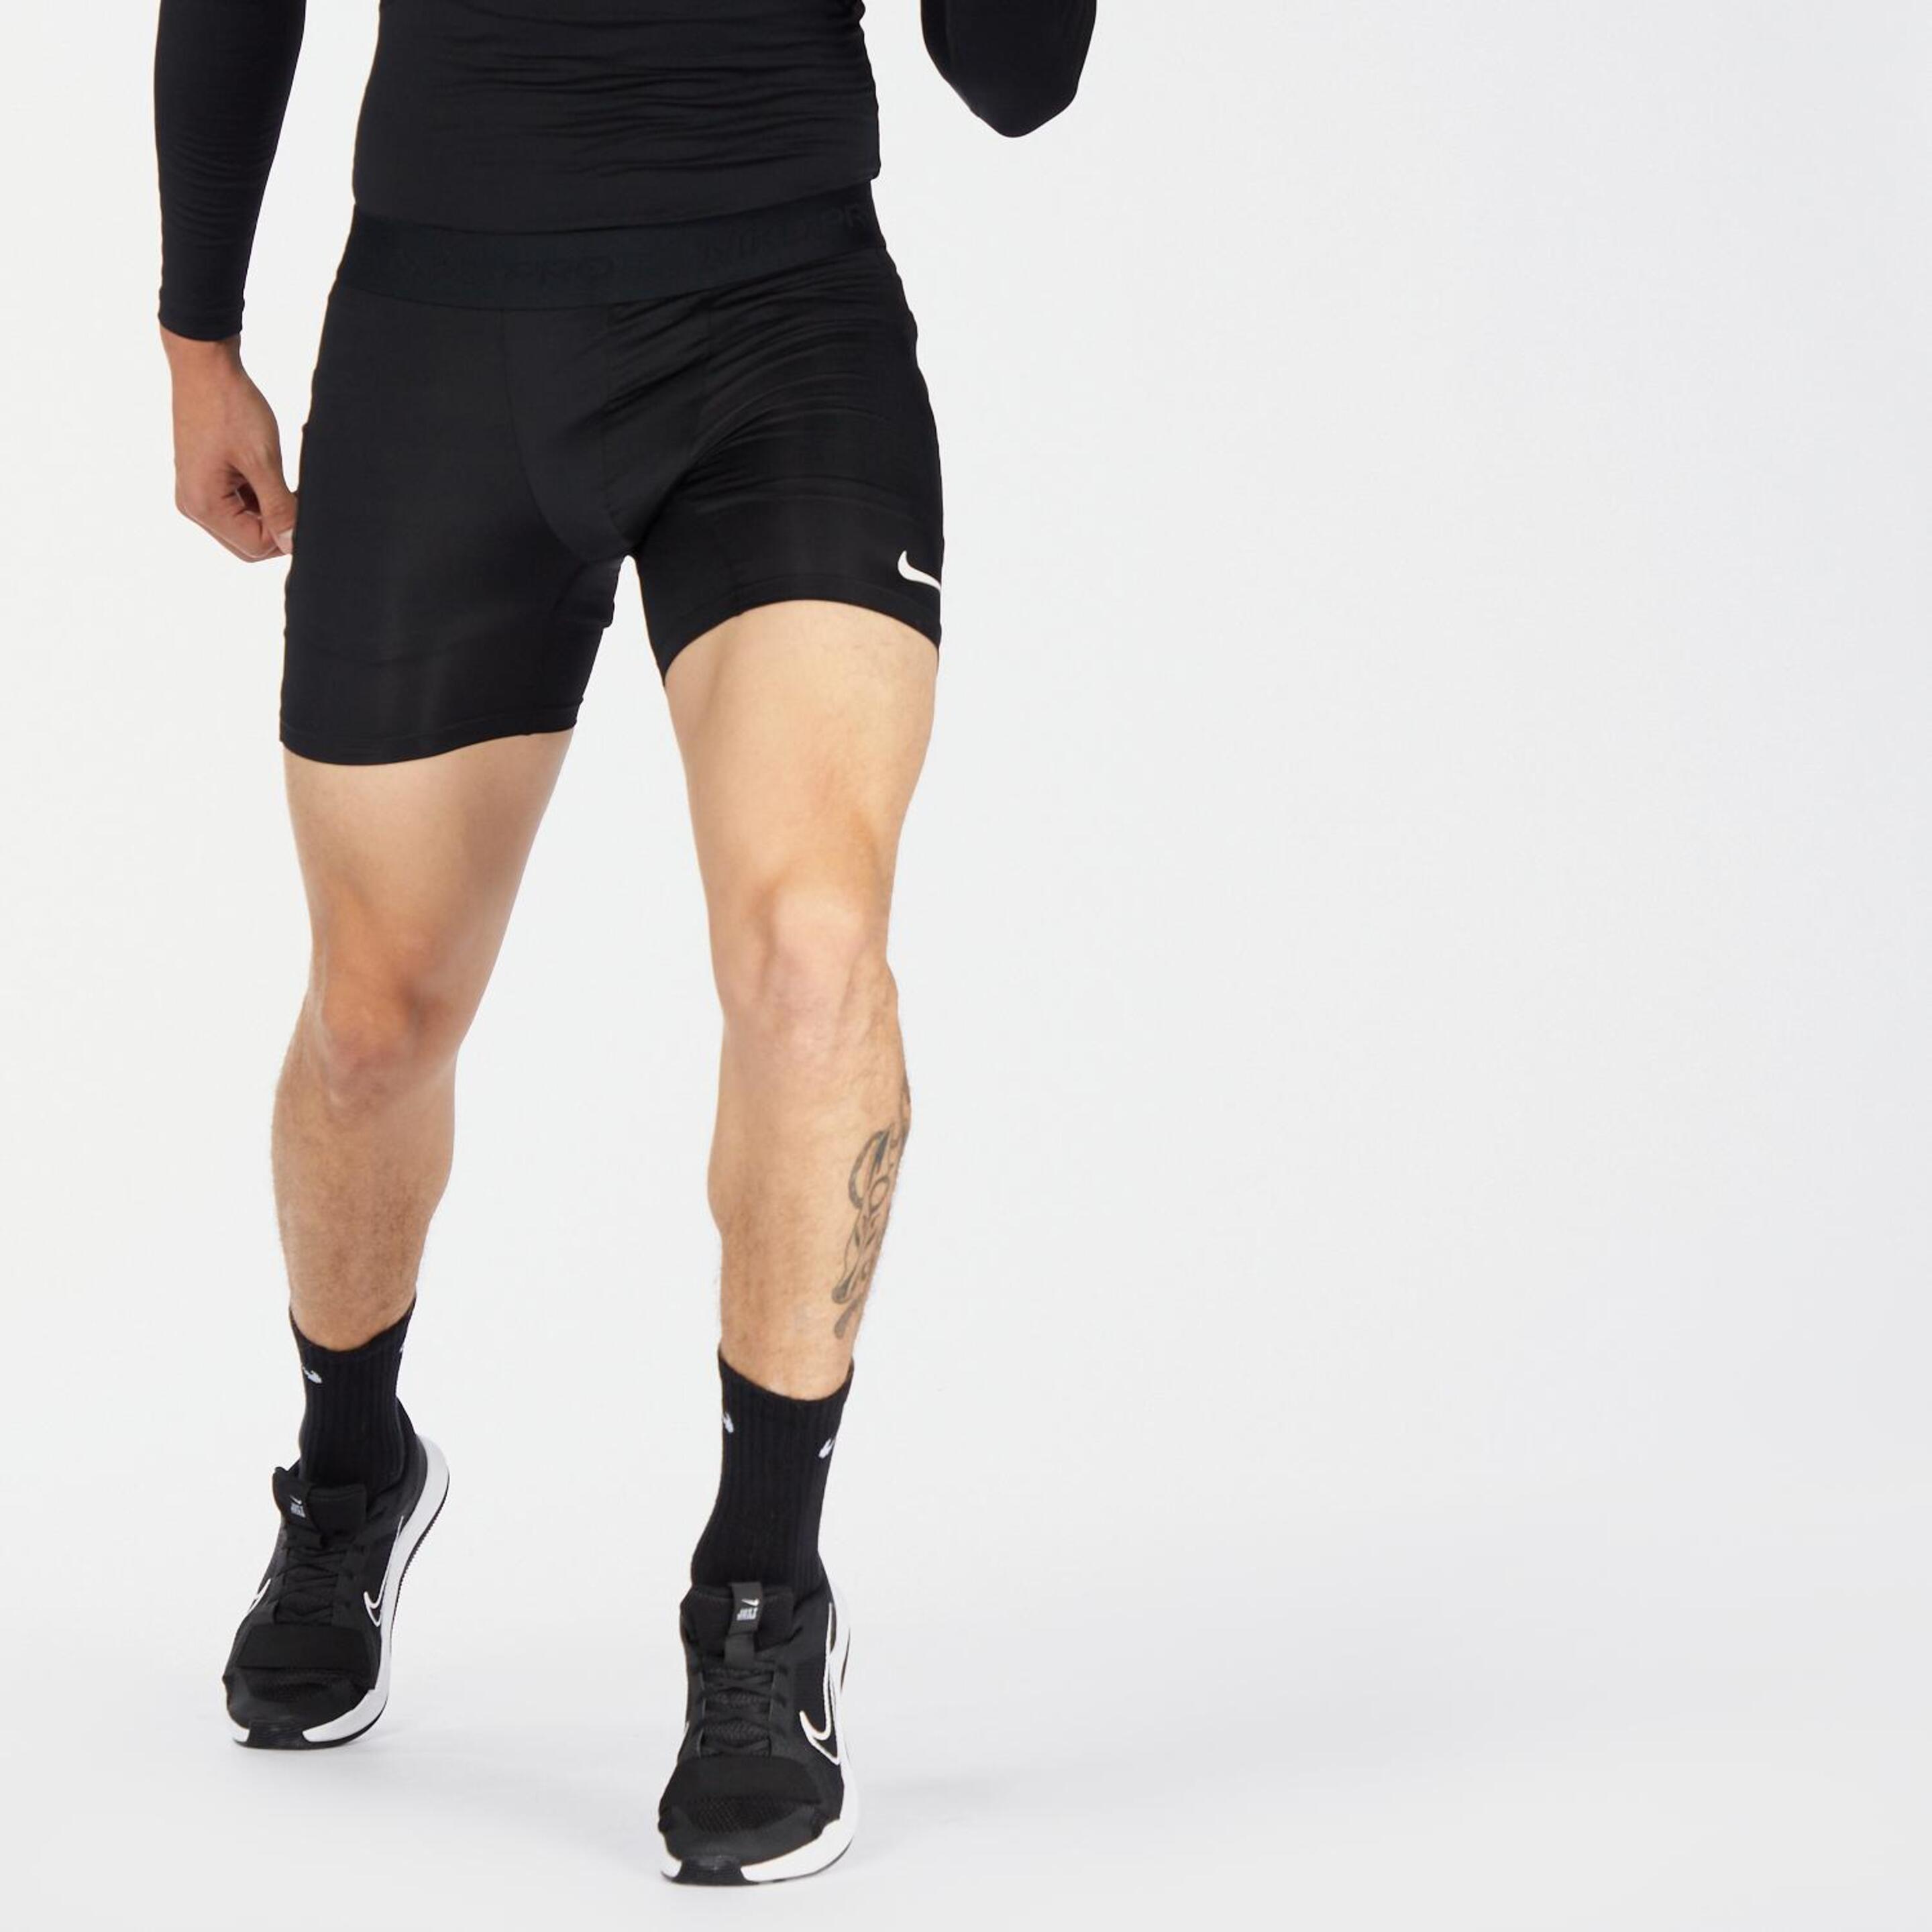 Calções Compressivos Nike - negro - Calções Homem